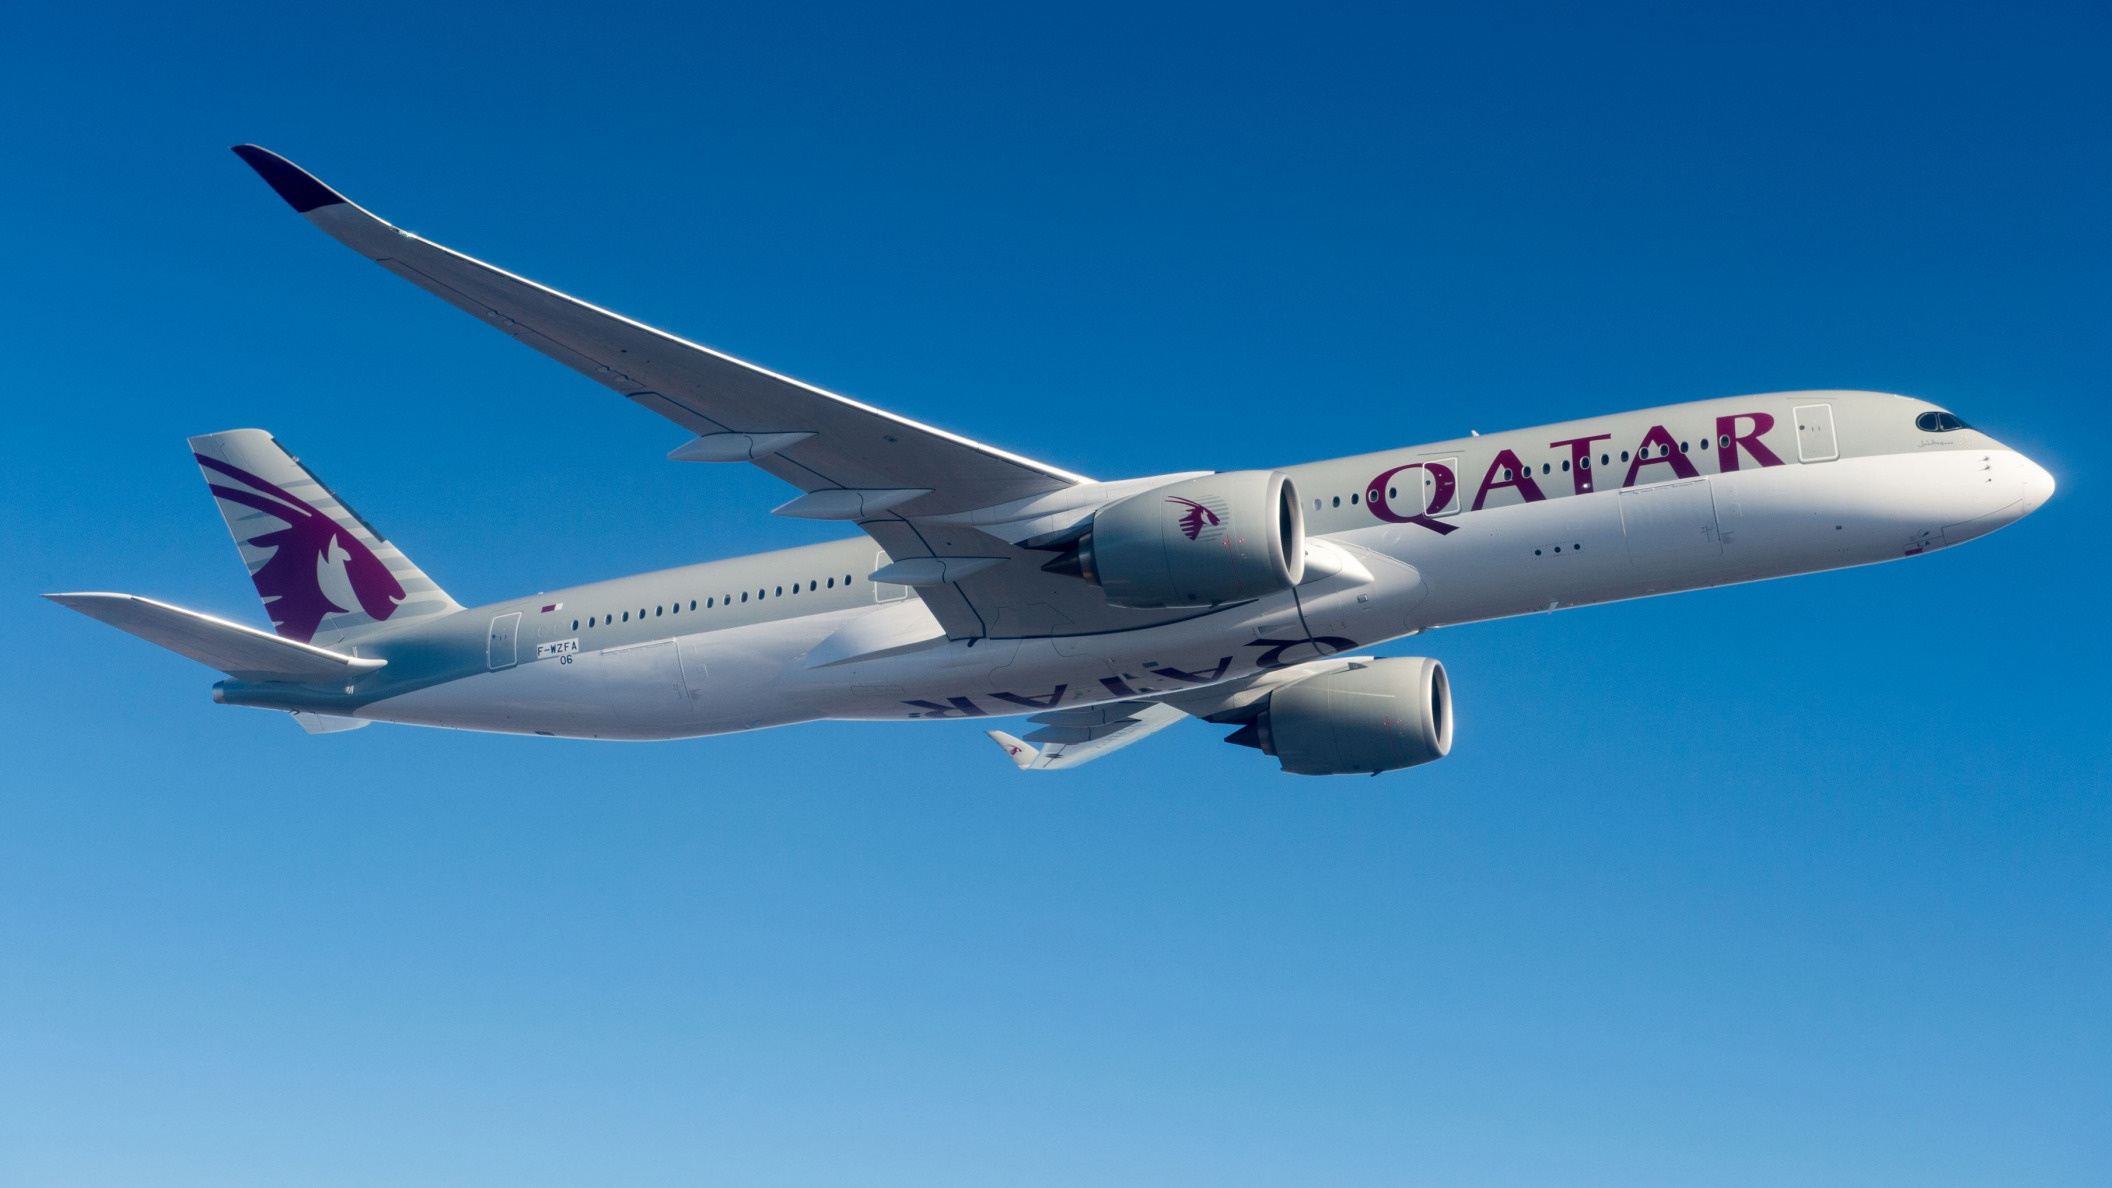 Airbus A350 wallpapers, Qatar Airways aircraft, Desktop backgrounds, Passenger experience, 2120x1190 HD Desktop